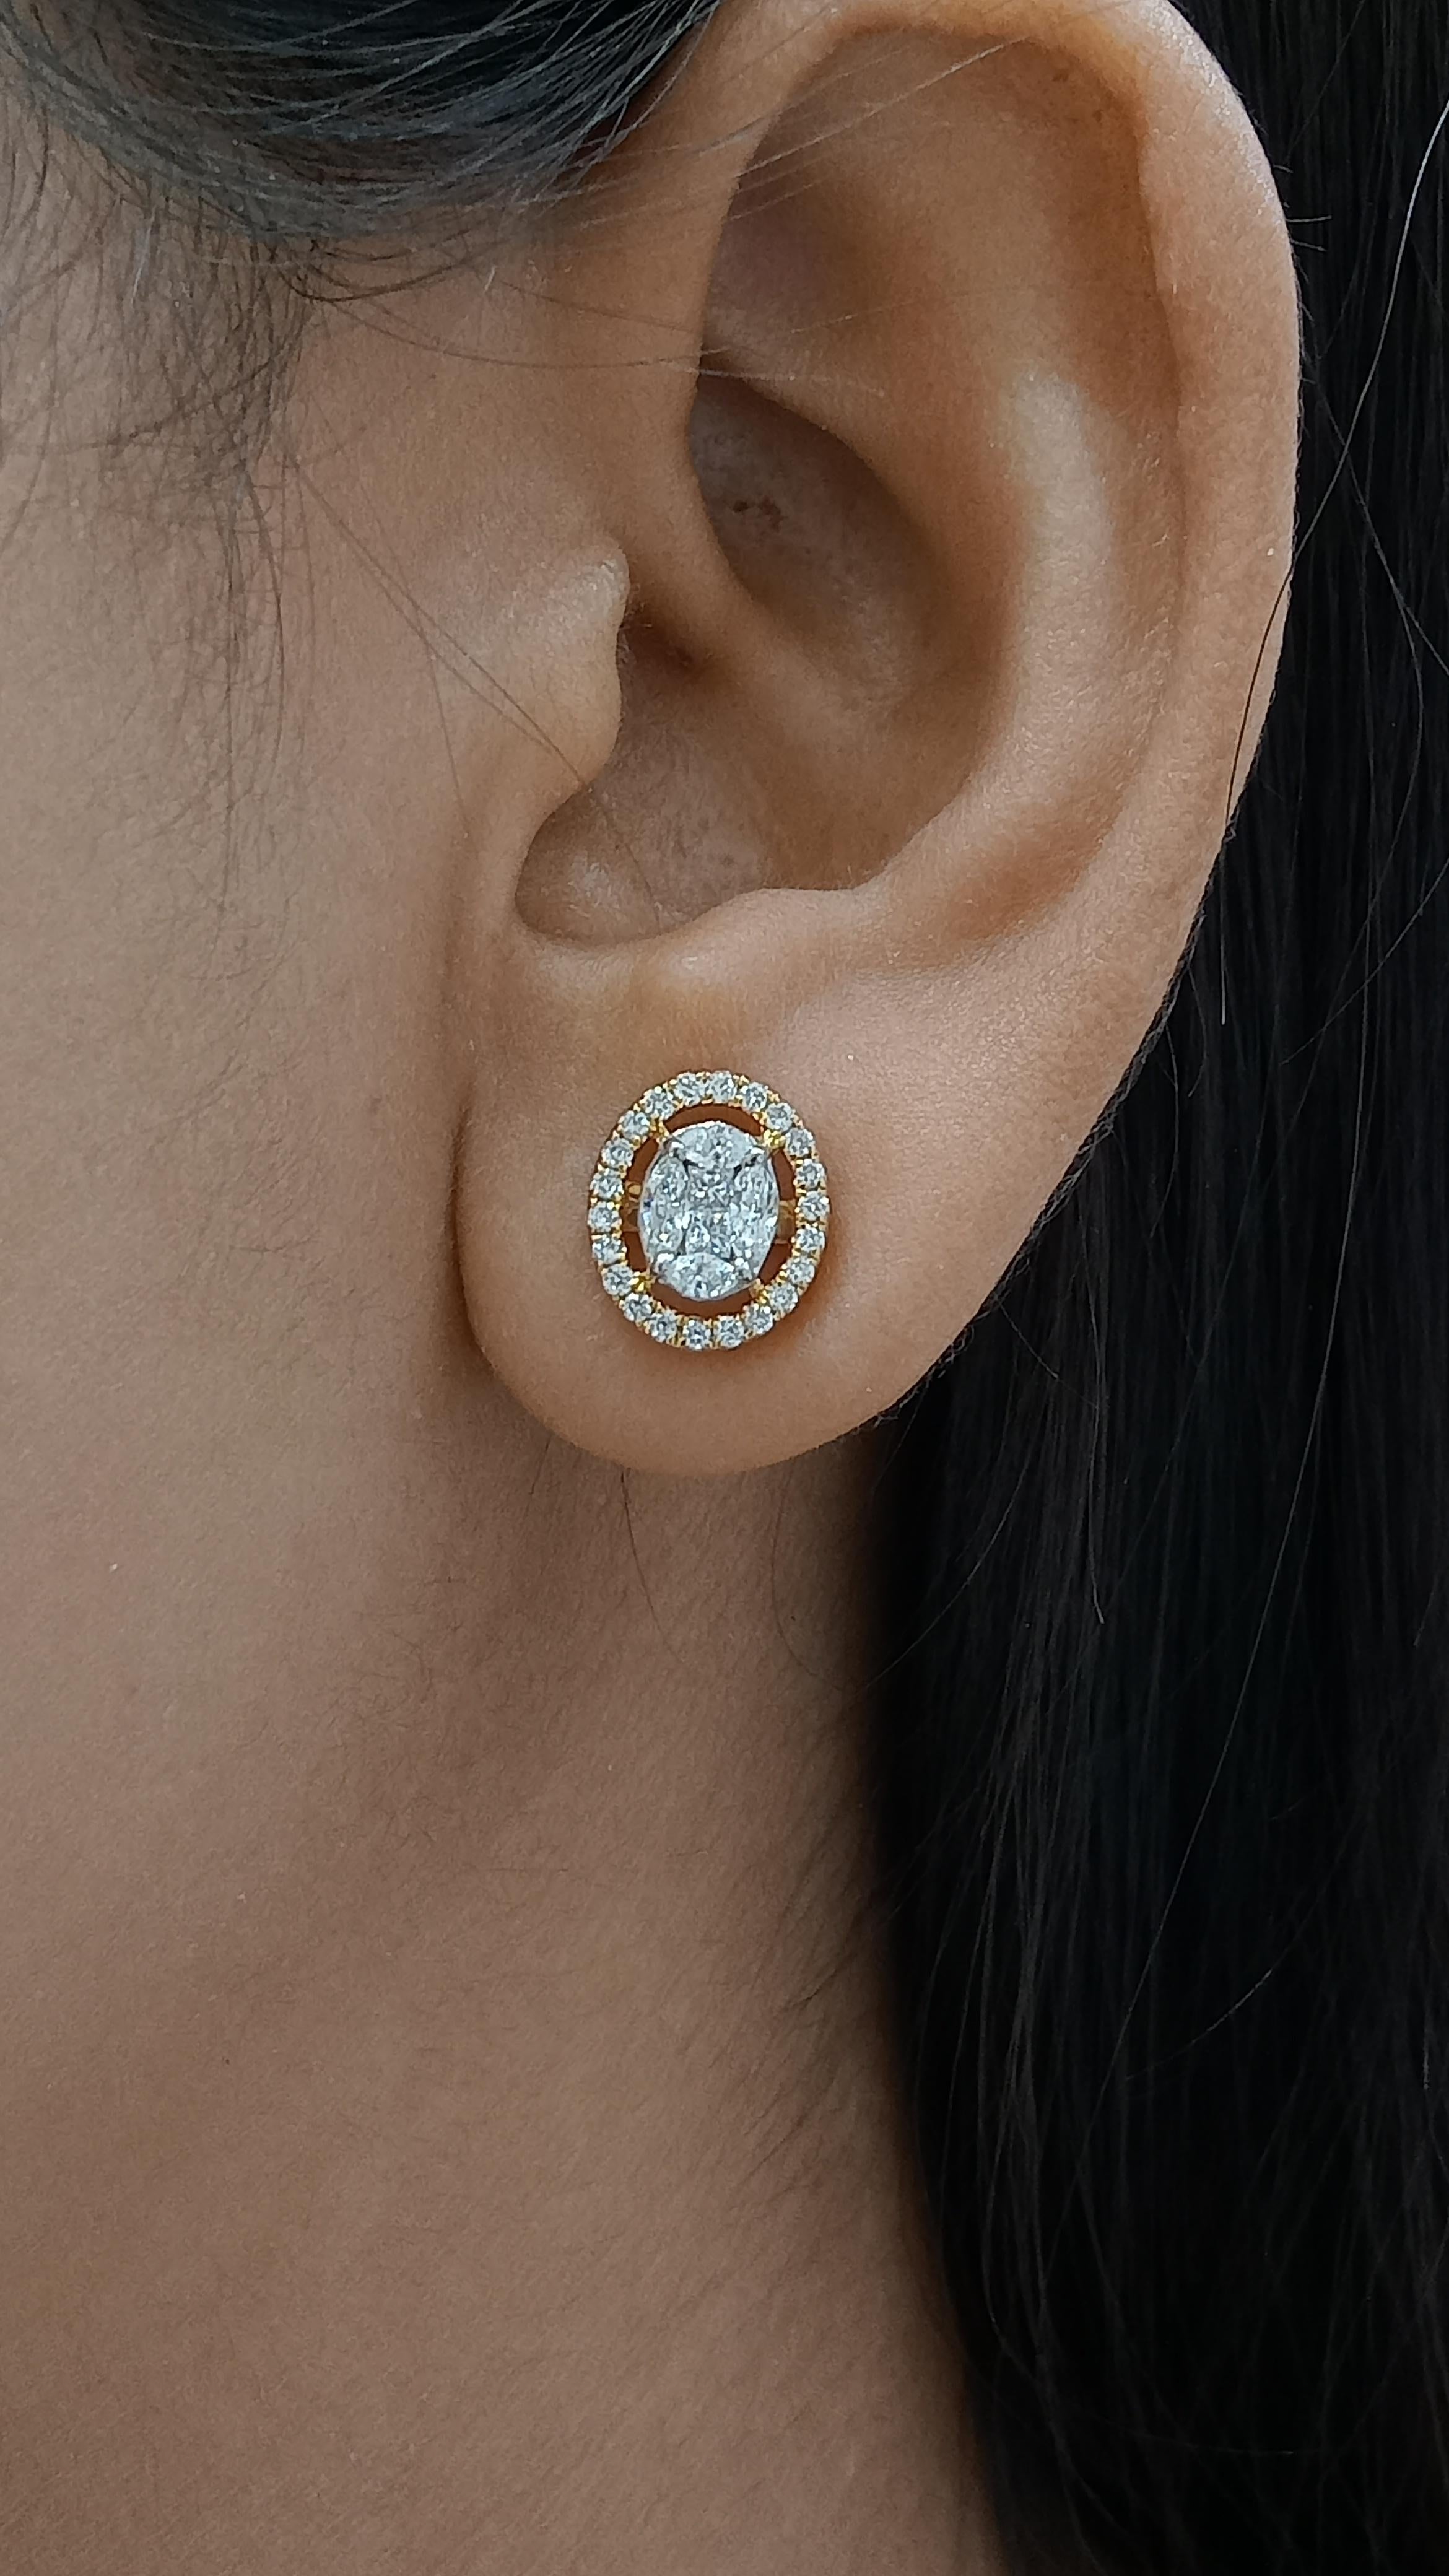 Cette paire de boucles d'oreilles intemporelle et portable que vous devez avoir cet été.


Poids de l'or-5.230gms
Poids du diamant - 0,84 carats
Poids des émeraudes-2,57 carats